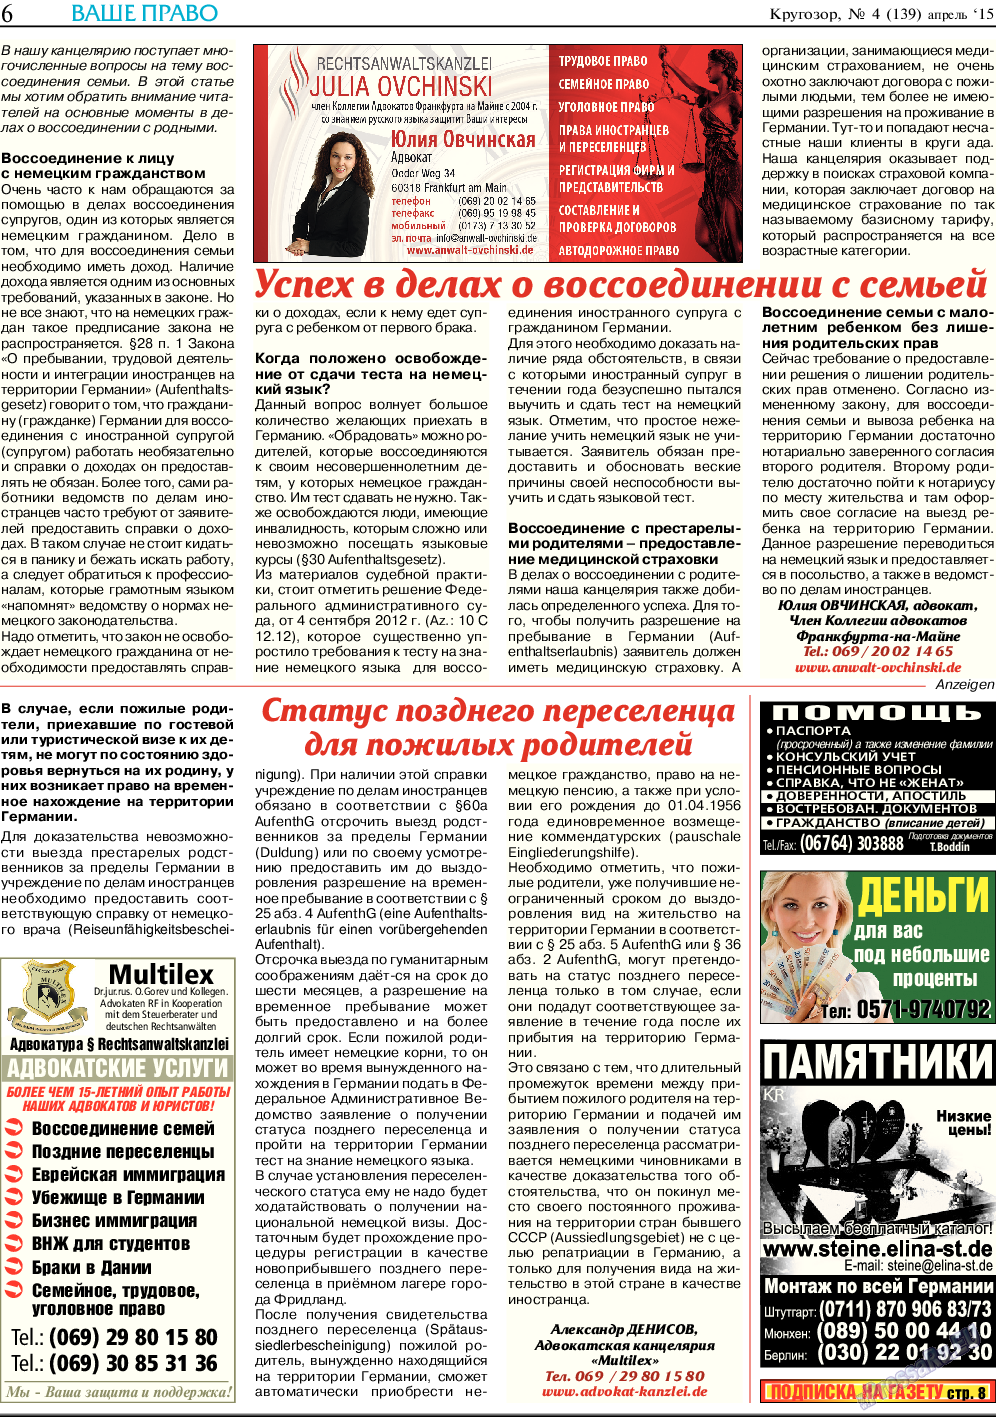 Кругозор, газета. 2015 №4 стр.6